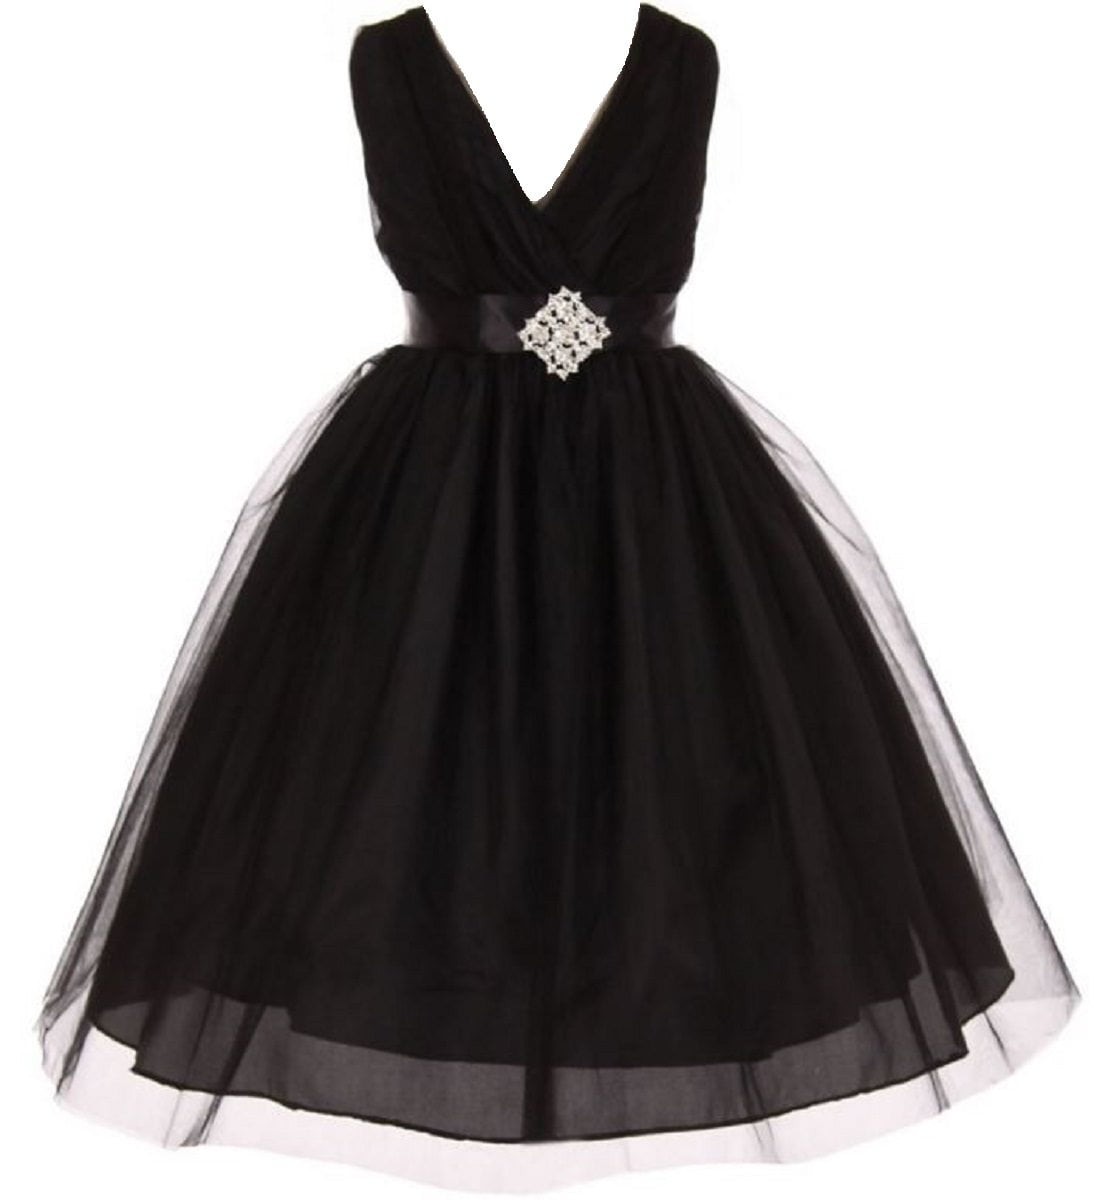 girls black tulle dress